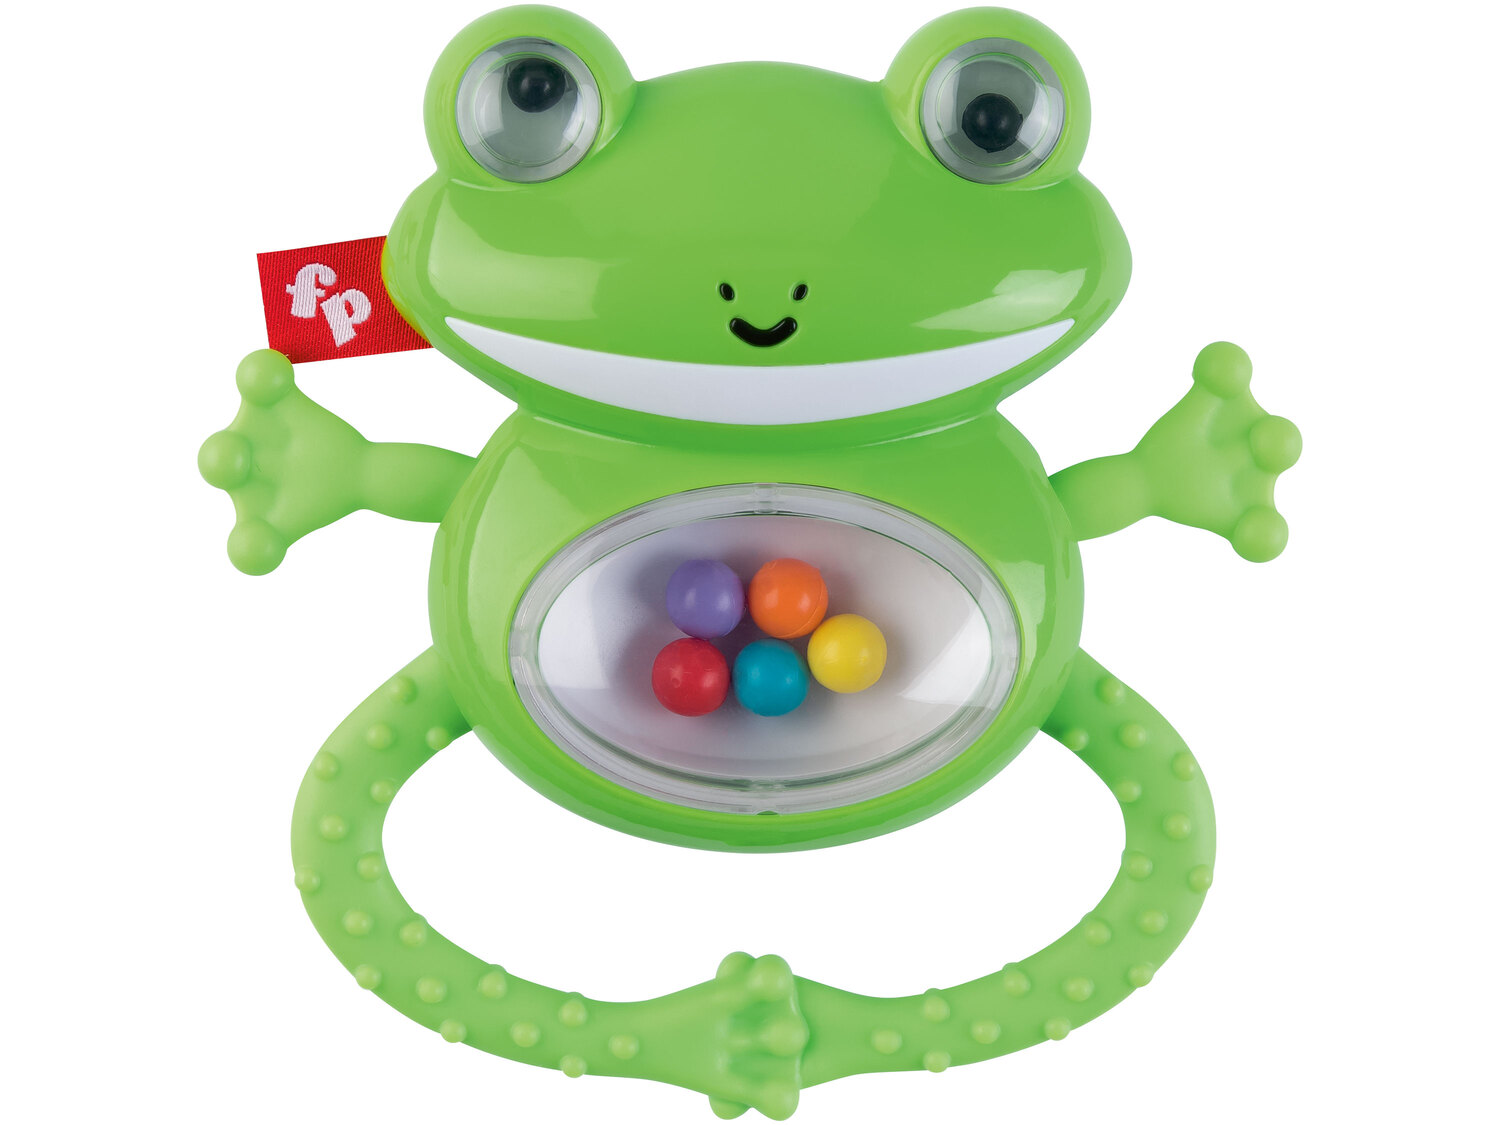 Zabawka sensoryczna Fisher-Price, cena 19,99 PLN 
- do wyboru: małpka, żabka grzechotka, ...